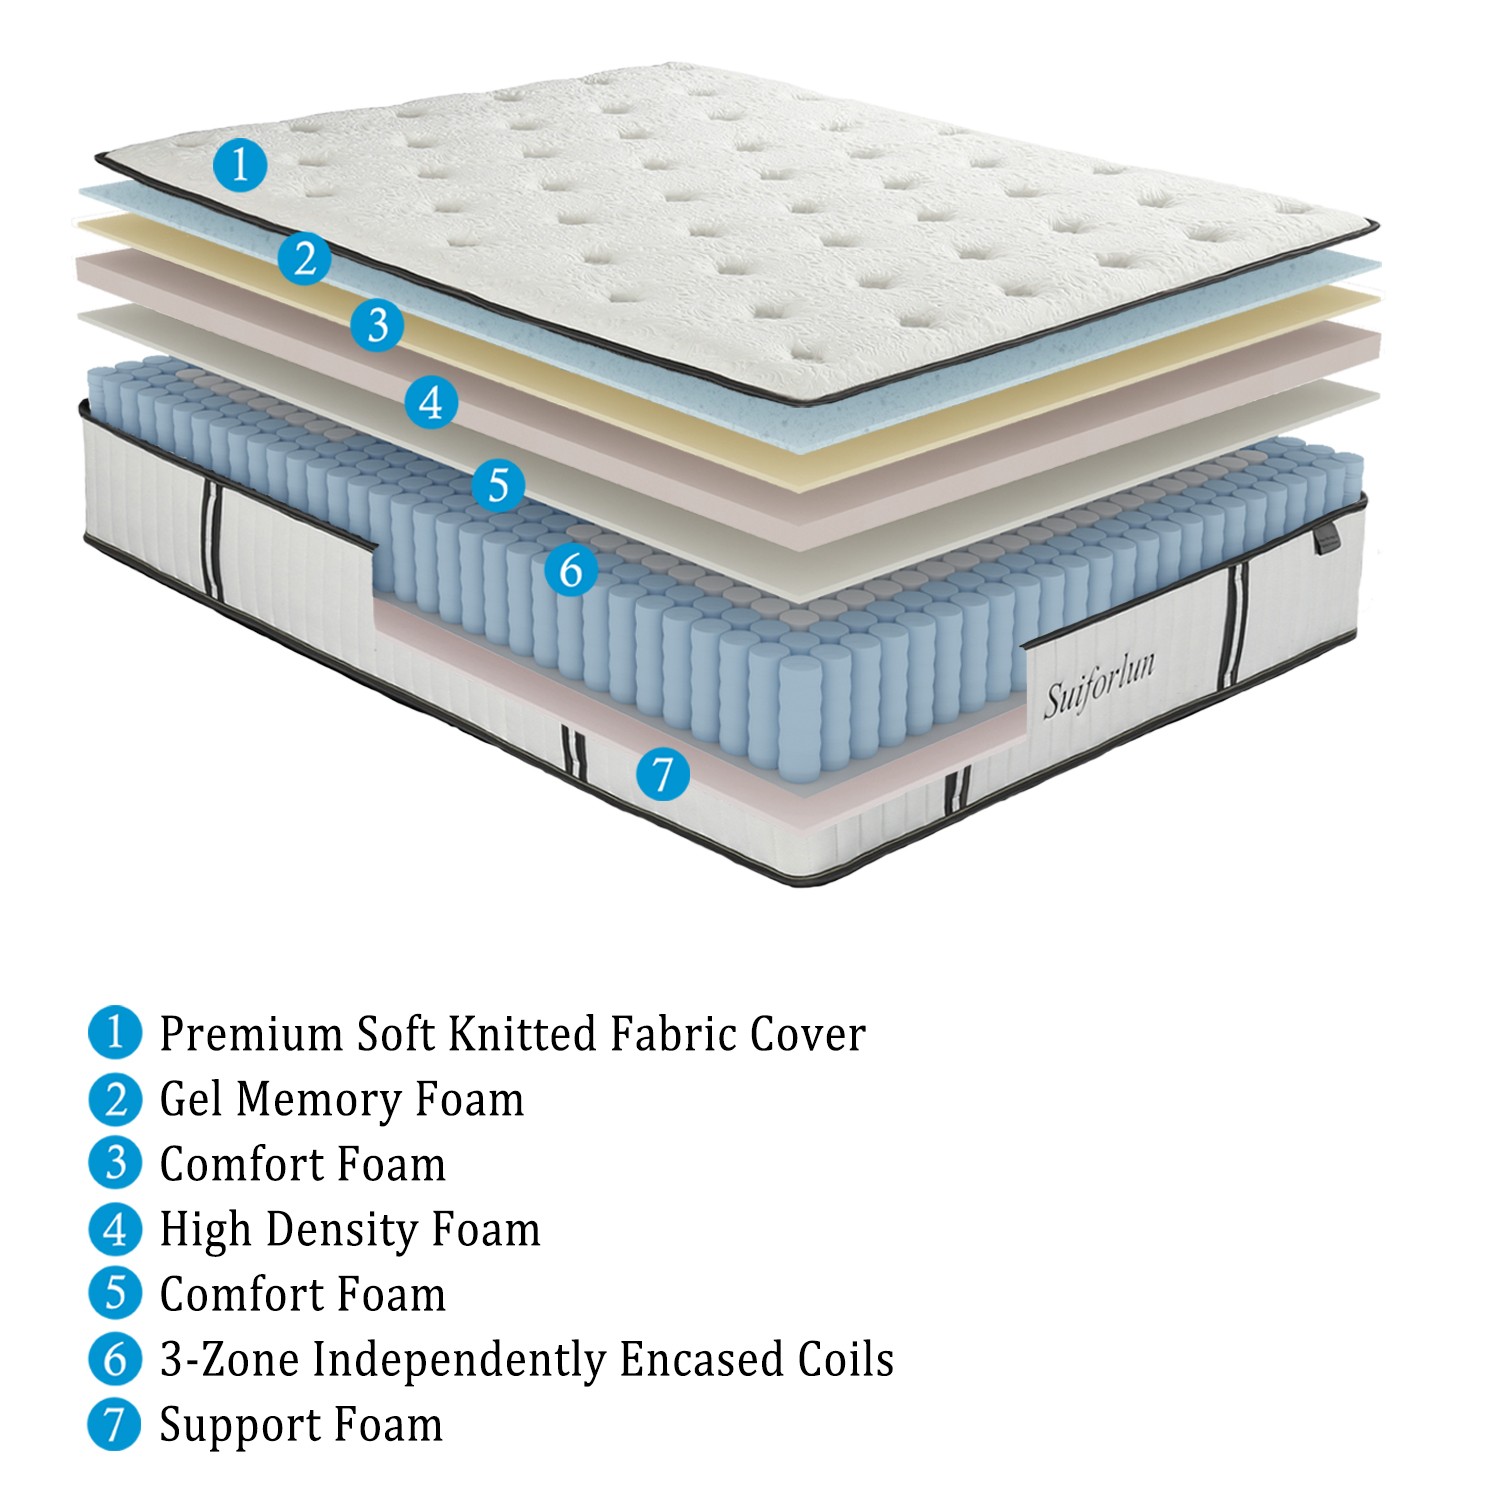 Suiforlun mattress queen hybrid mattress series-2